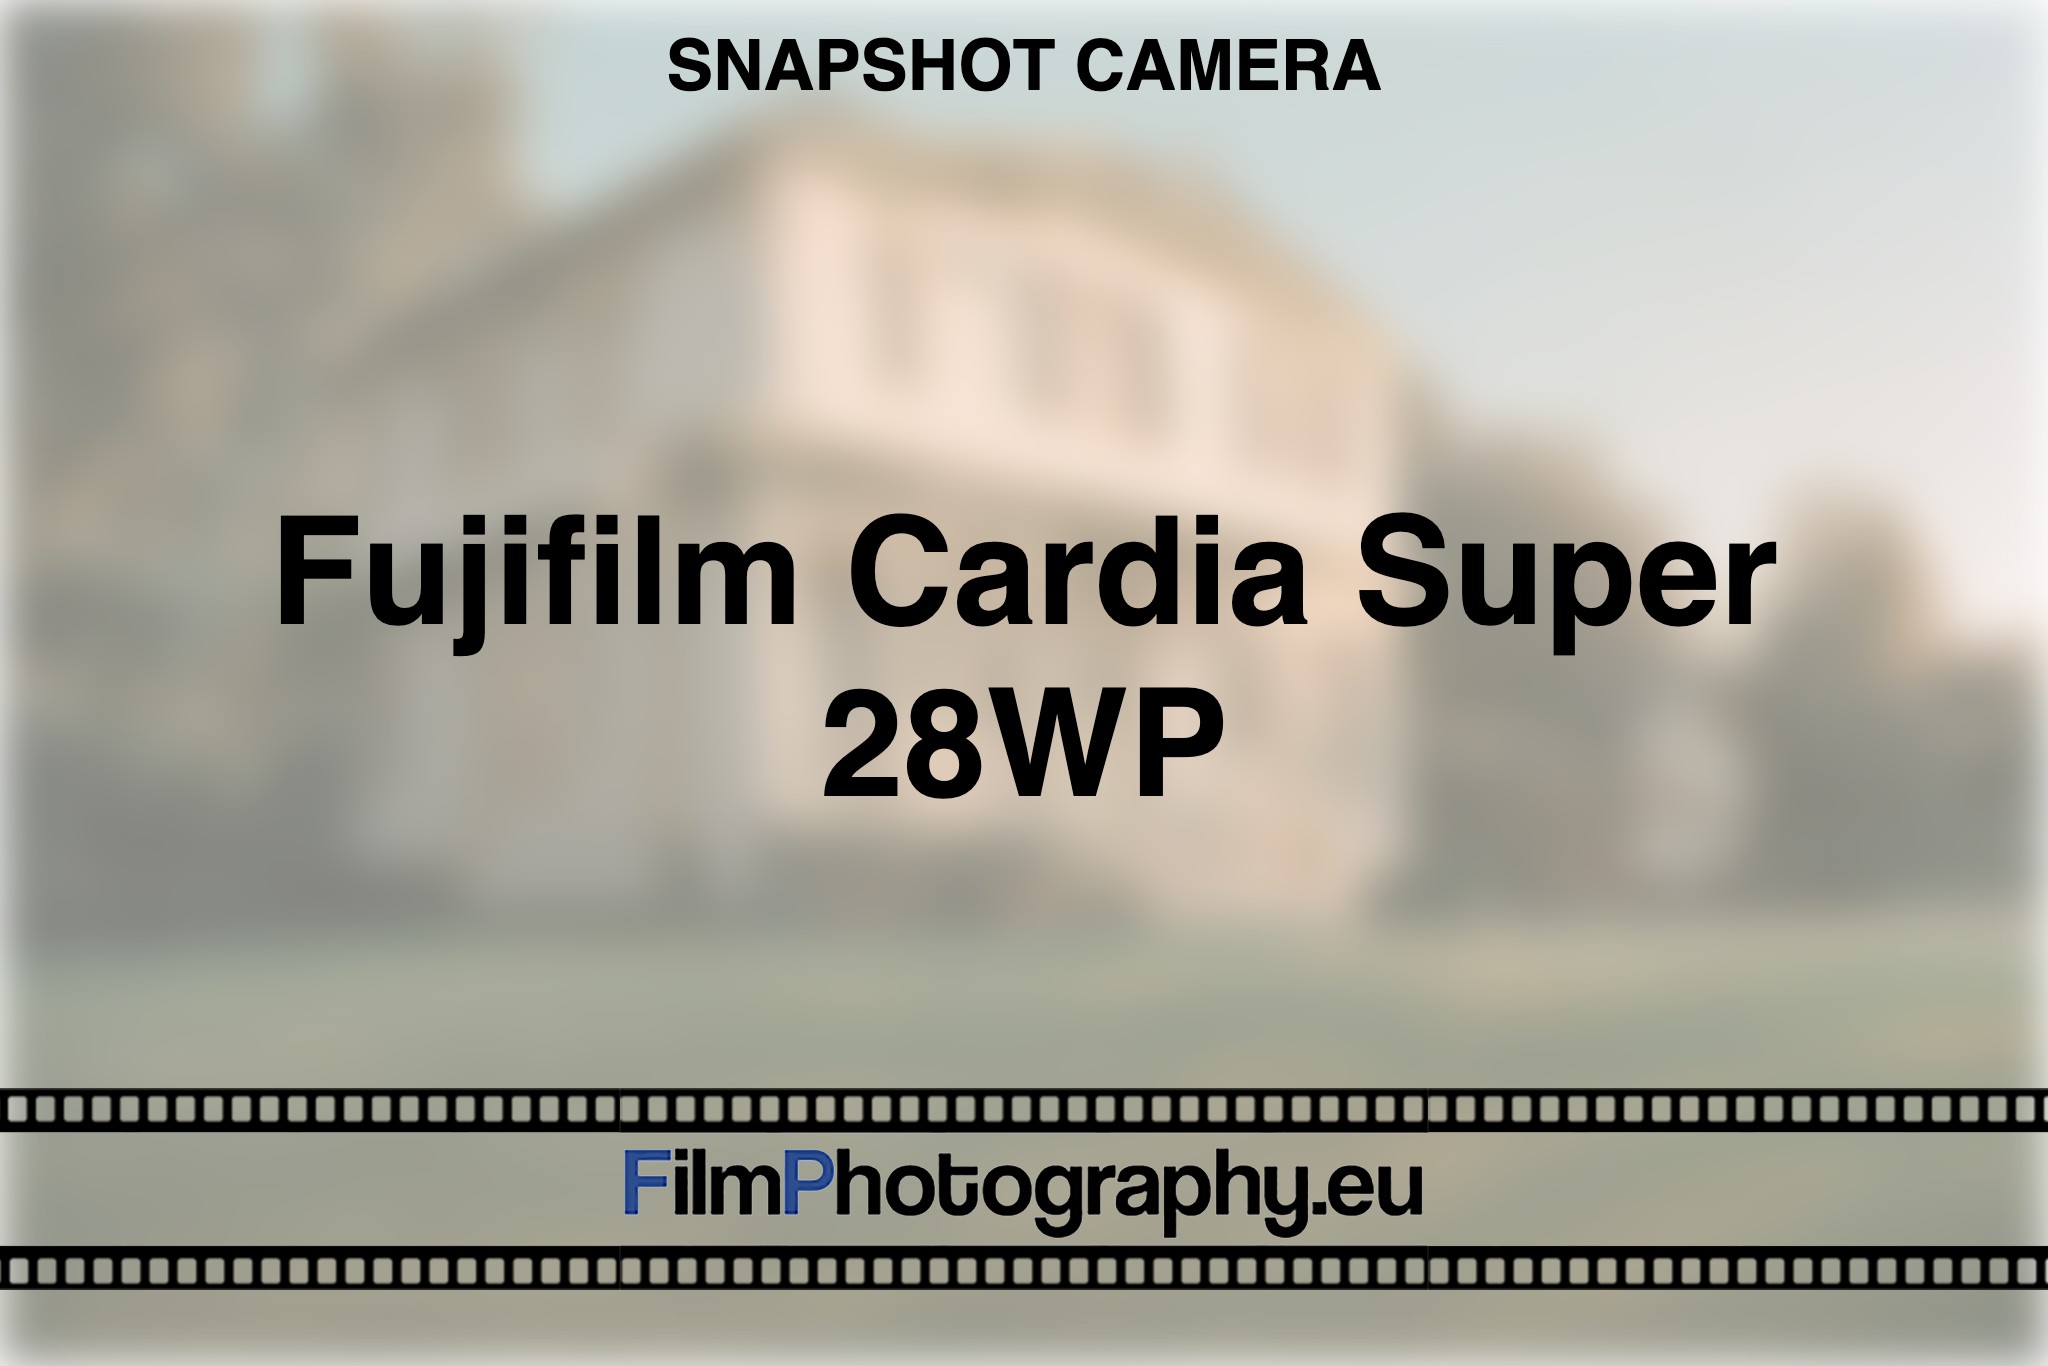 fujifilm-cardia-super-28wp-snapshot-camera-bnv